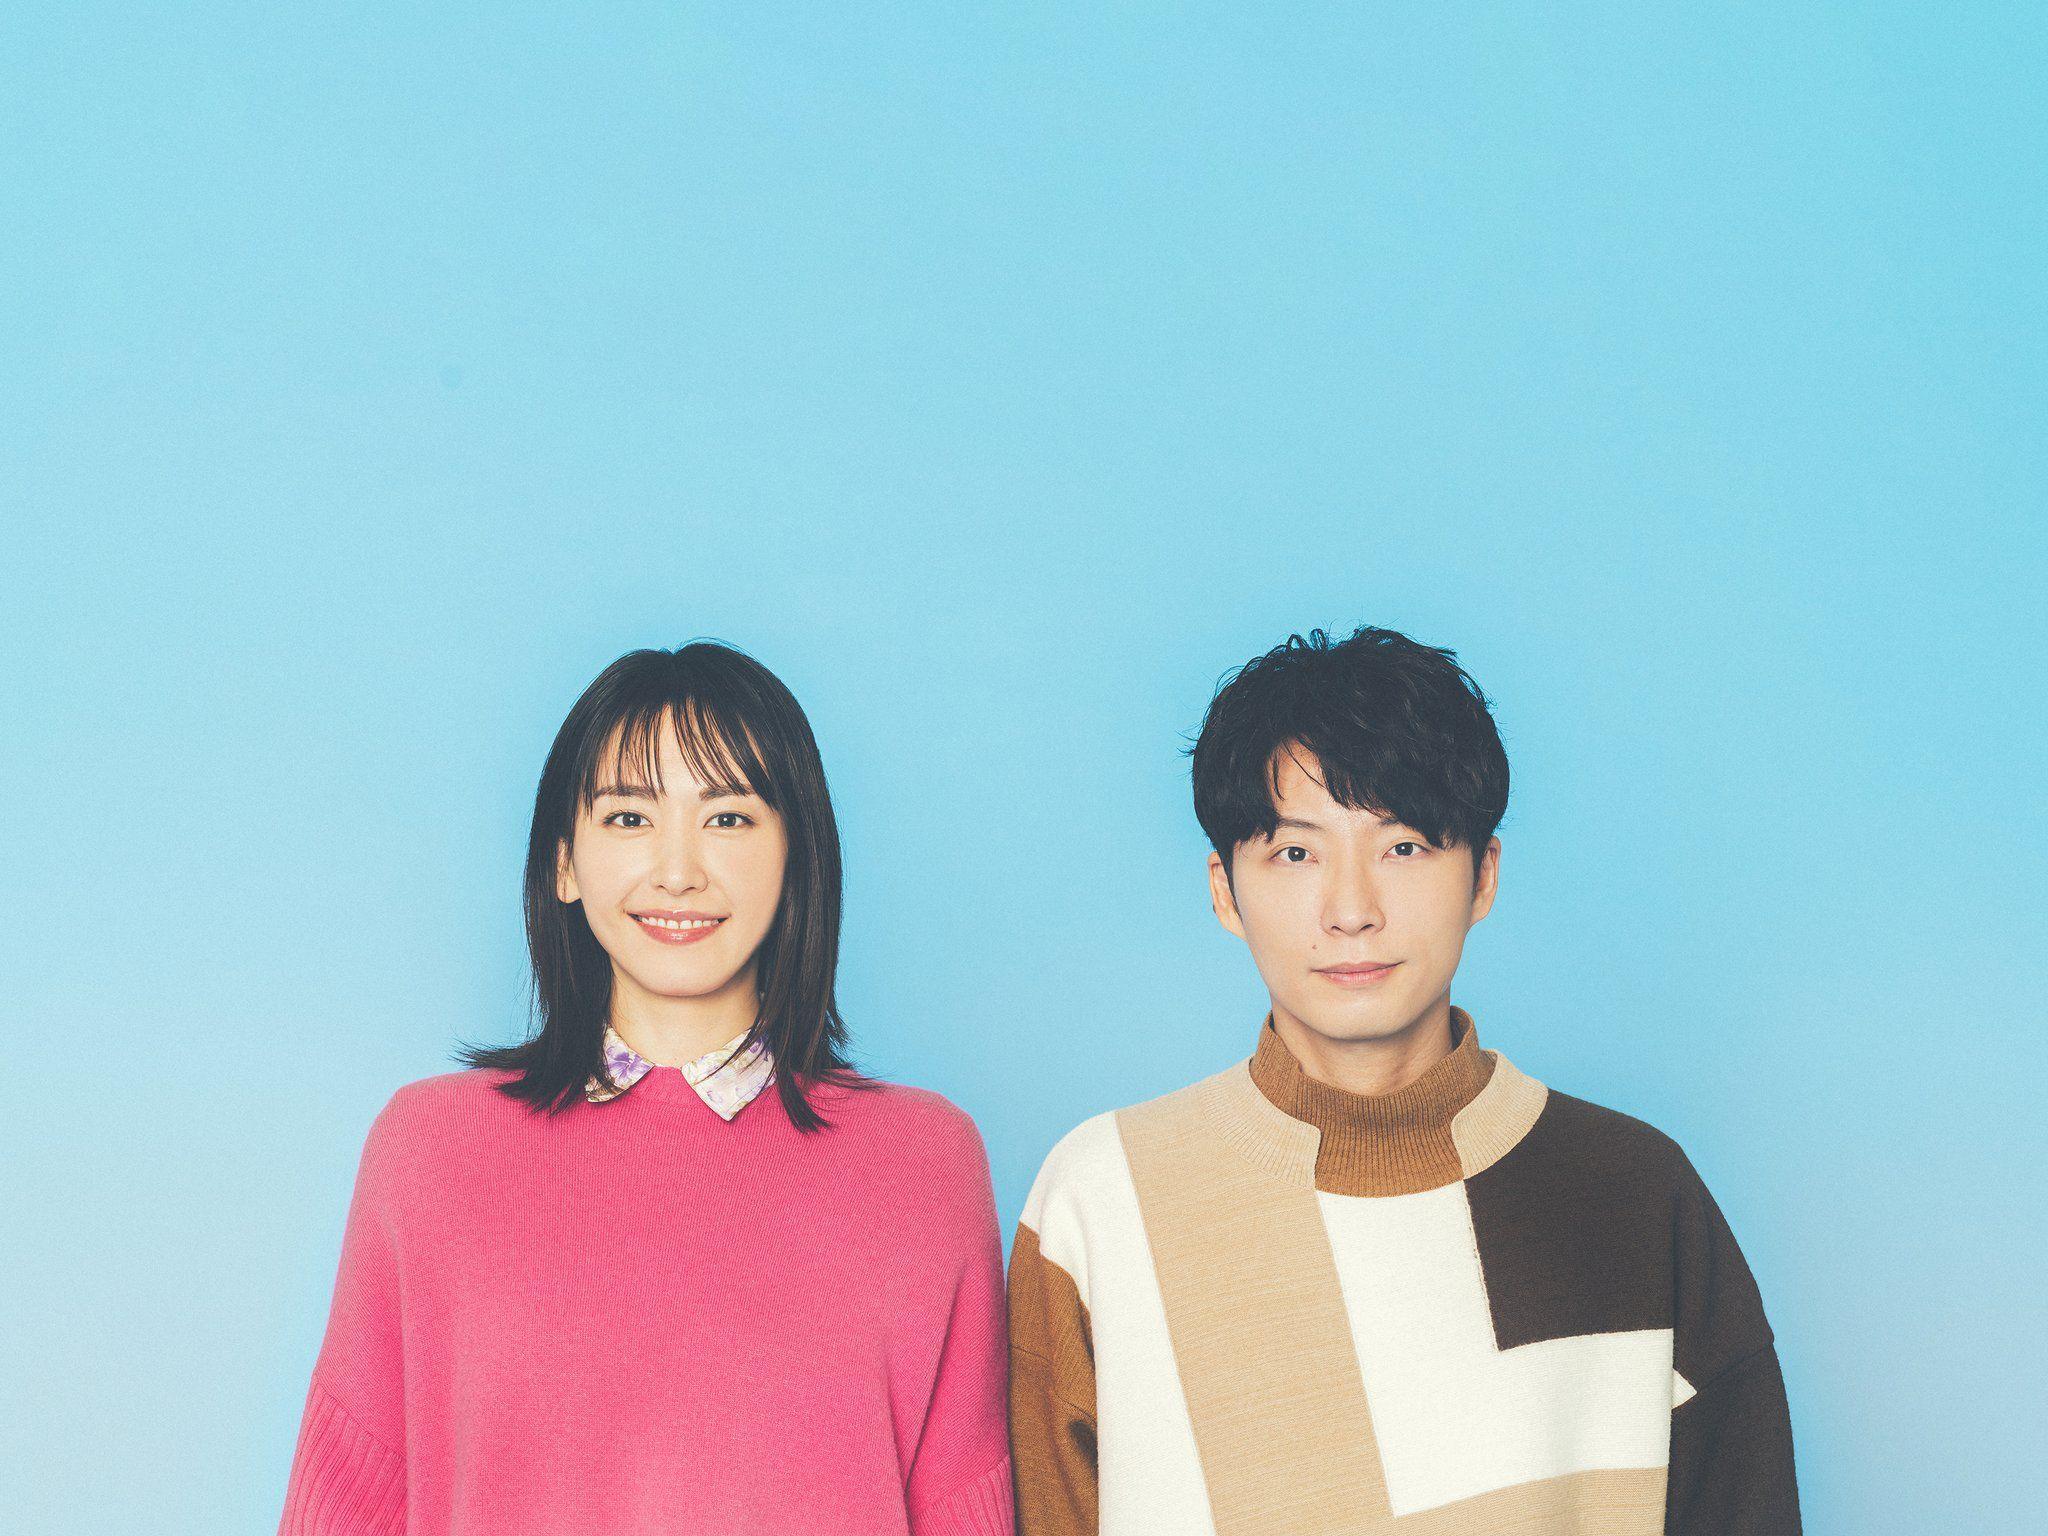 Cặp đôi đứng đầu BXH chính là "ngọc nữ Nhật Bản" Aragaki Yui và nam diễn viên Hoshino Gen với 725 phiếu bình chọn từ khán giả. (Nguồn: Internet)